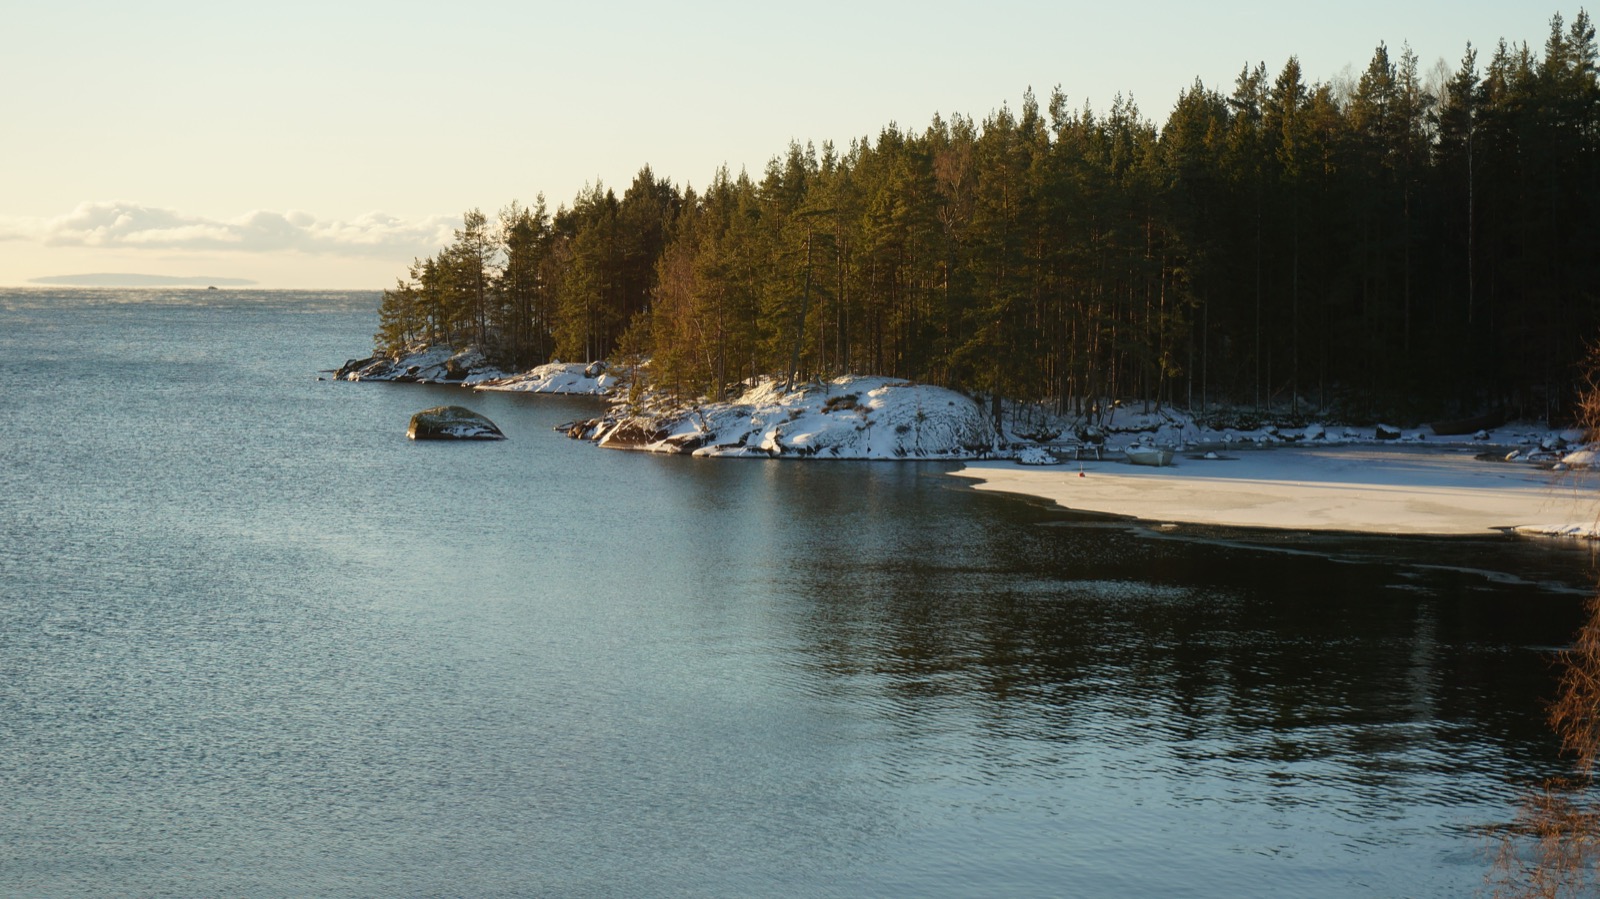 Am Vättern, dem zweitgrößten See Schwedens ist der Winter am 5. Januar schon vorbei